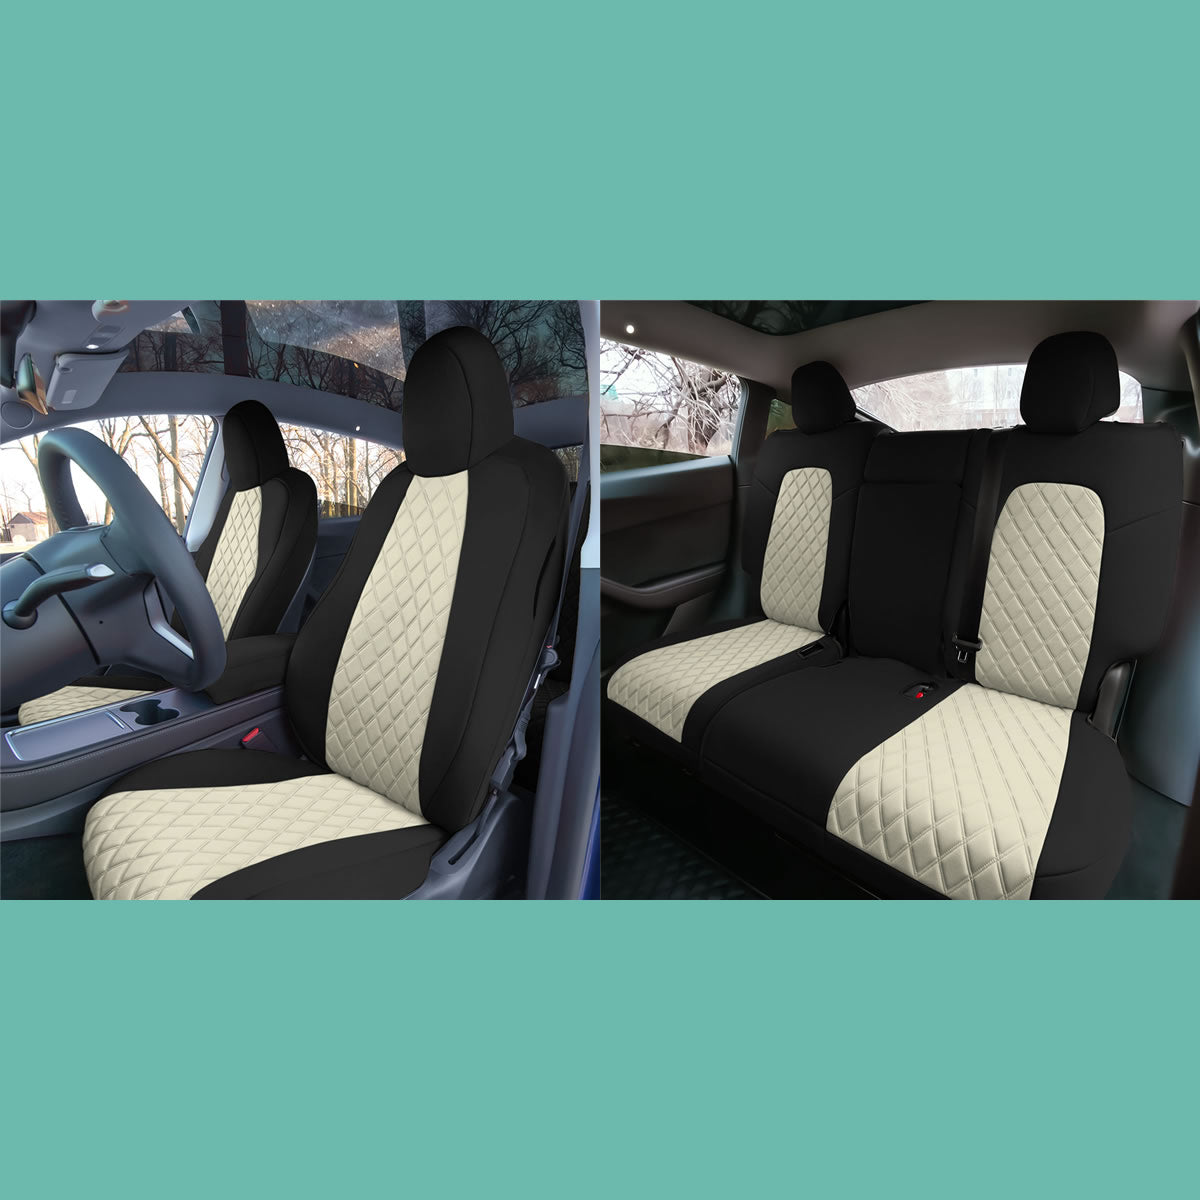 EKR Custom Fit Model Y Car Seat Covers for Tesla Model Y 2019 2020